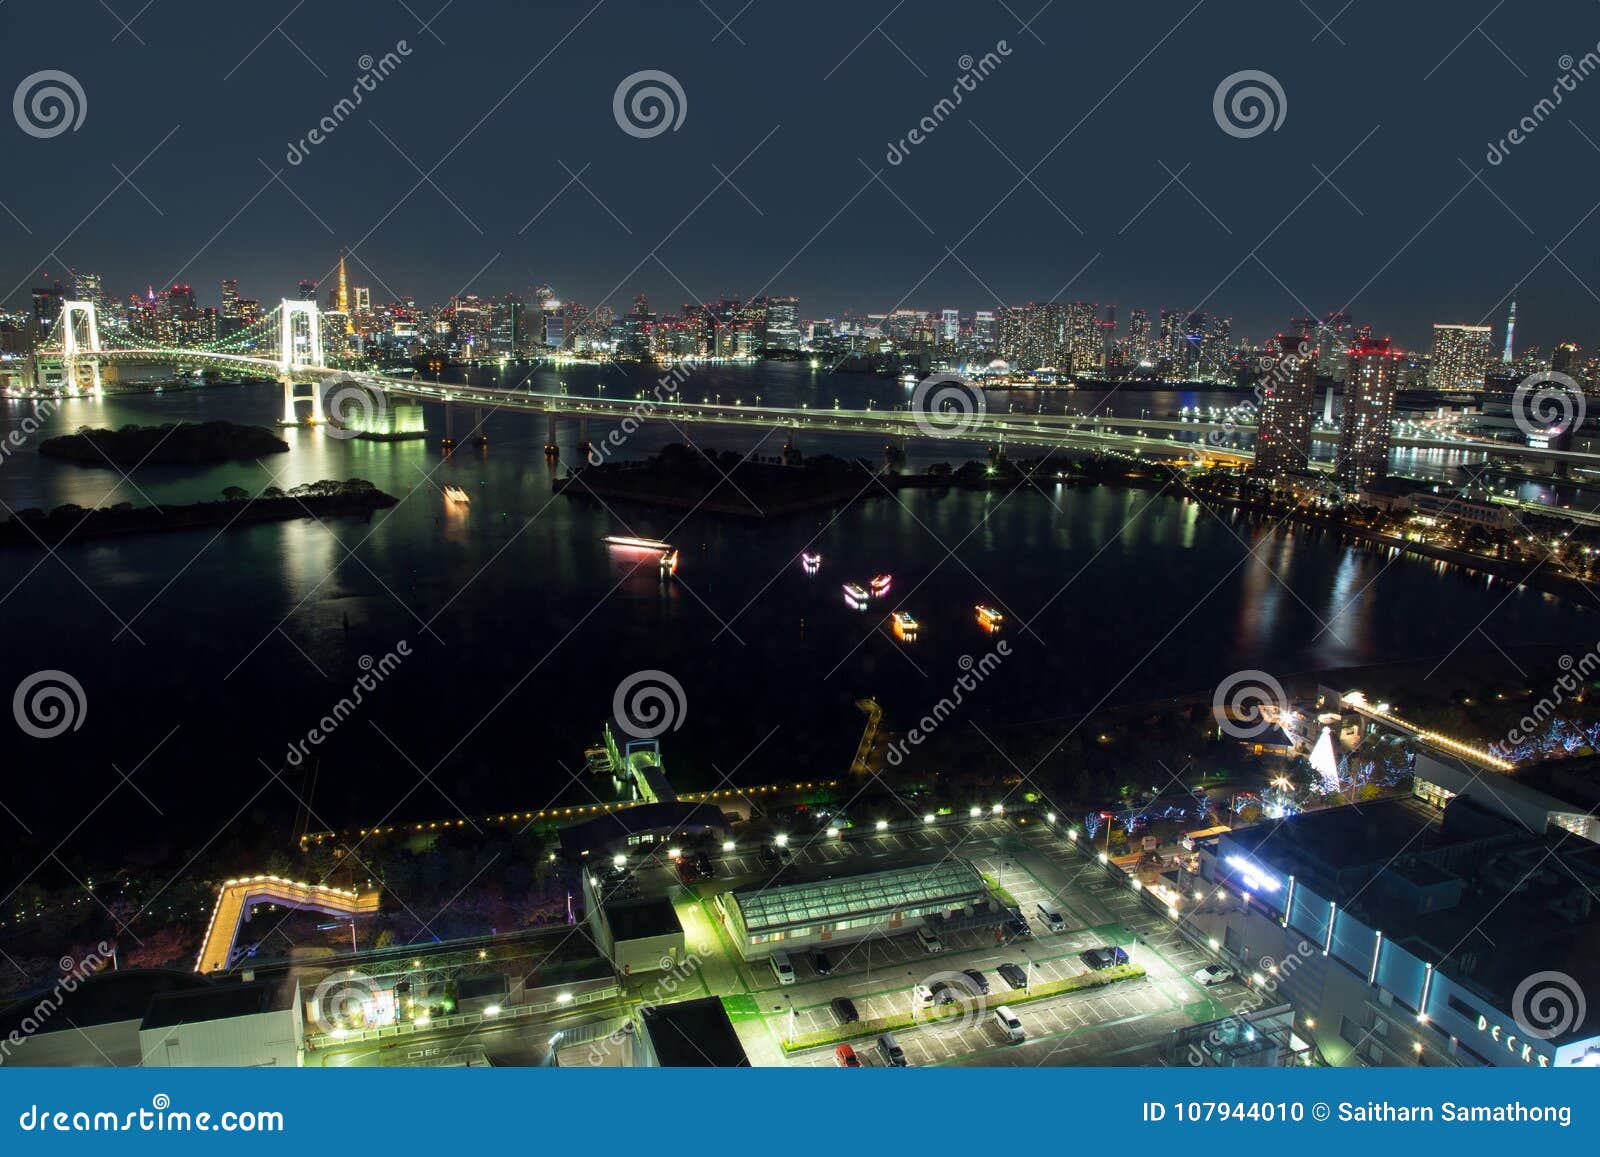 tokyo, japan - november 19 ,2017 : see night cityscape from fuji tv building at odaiba